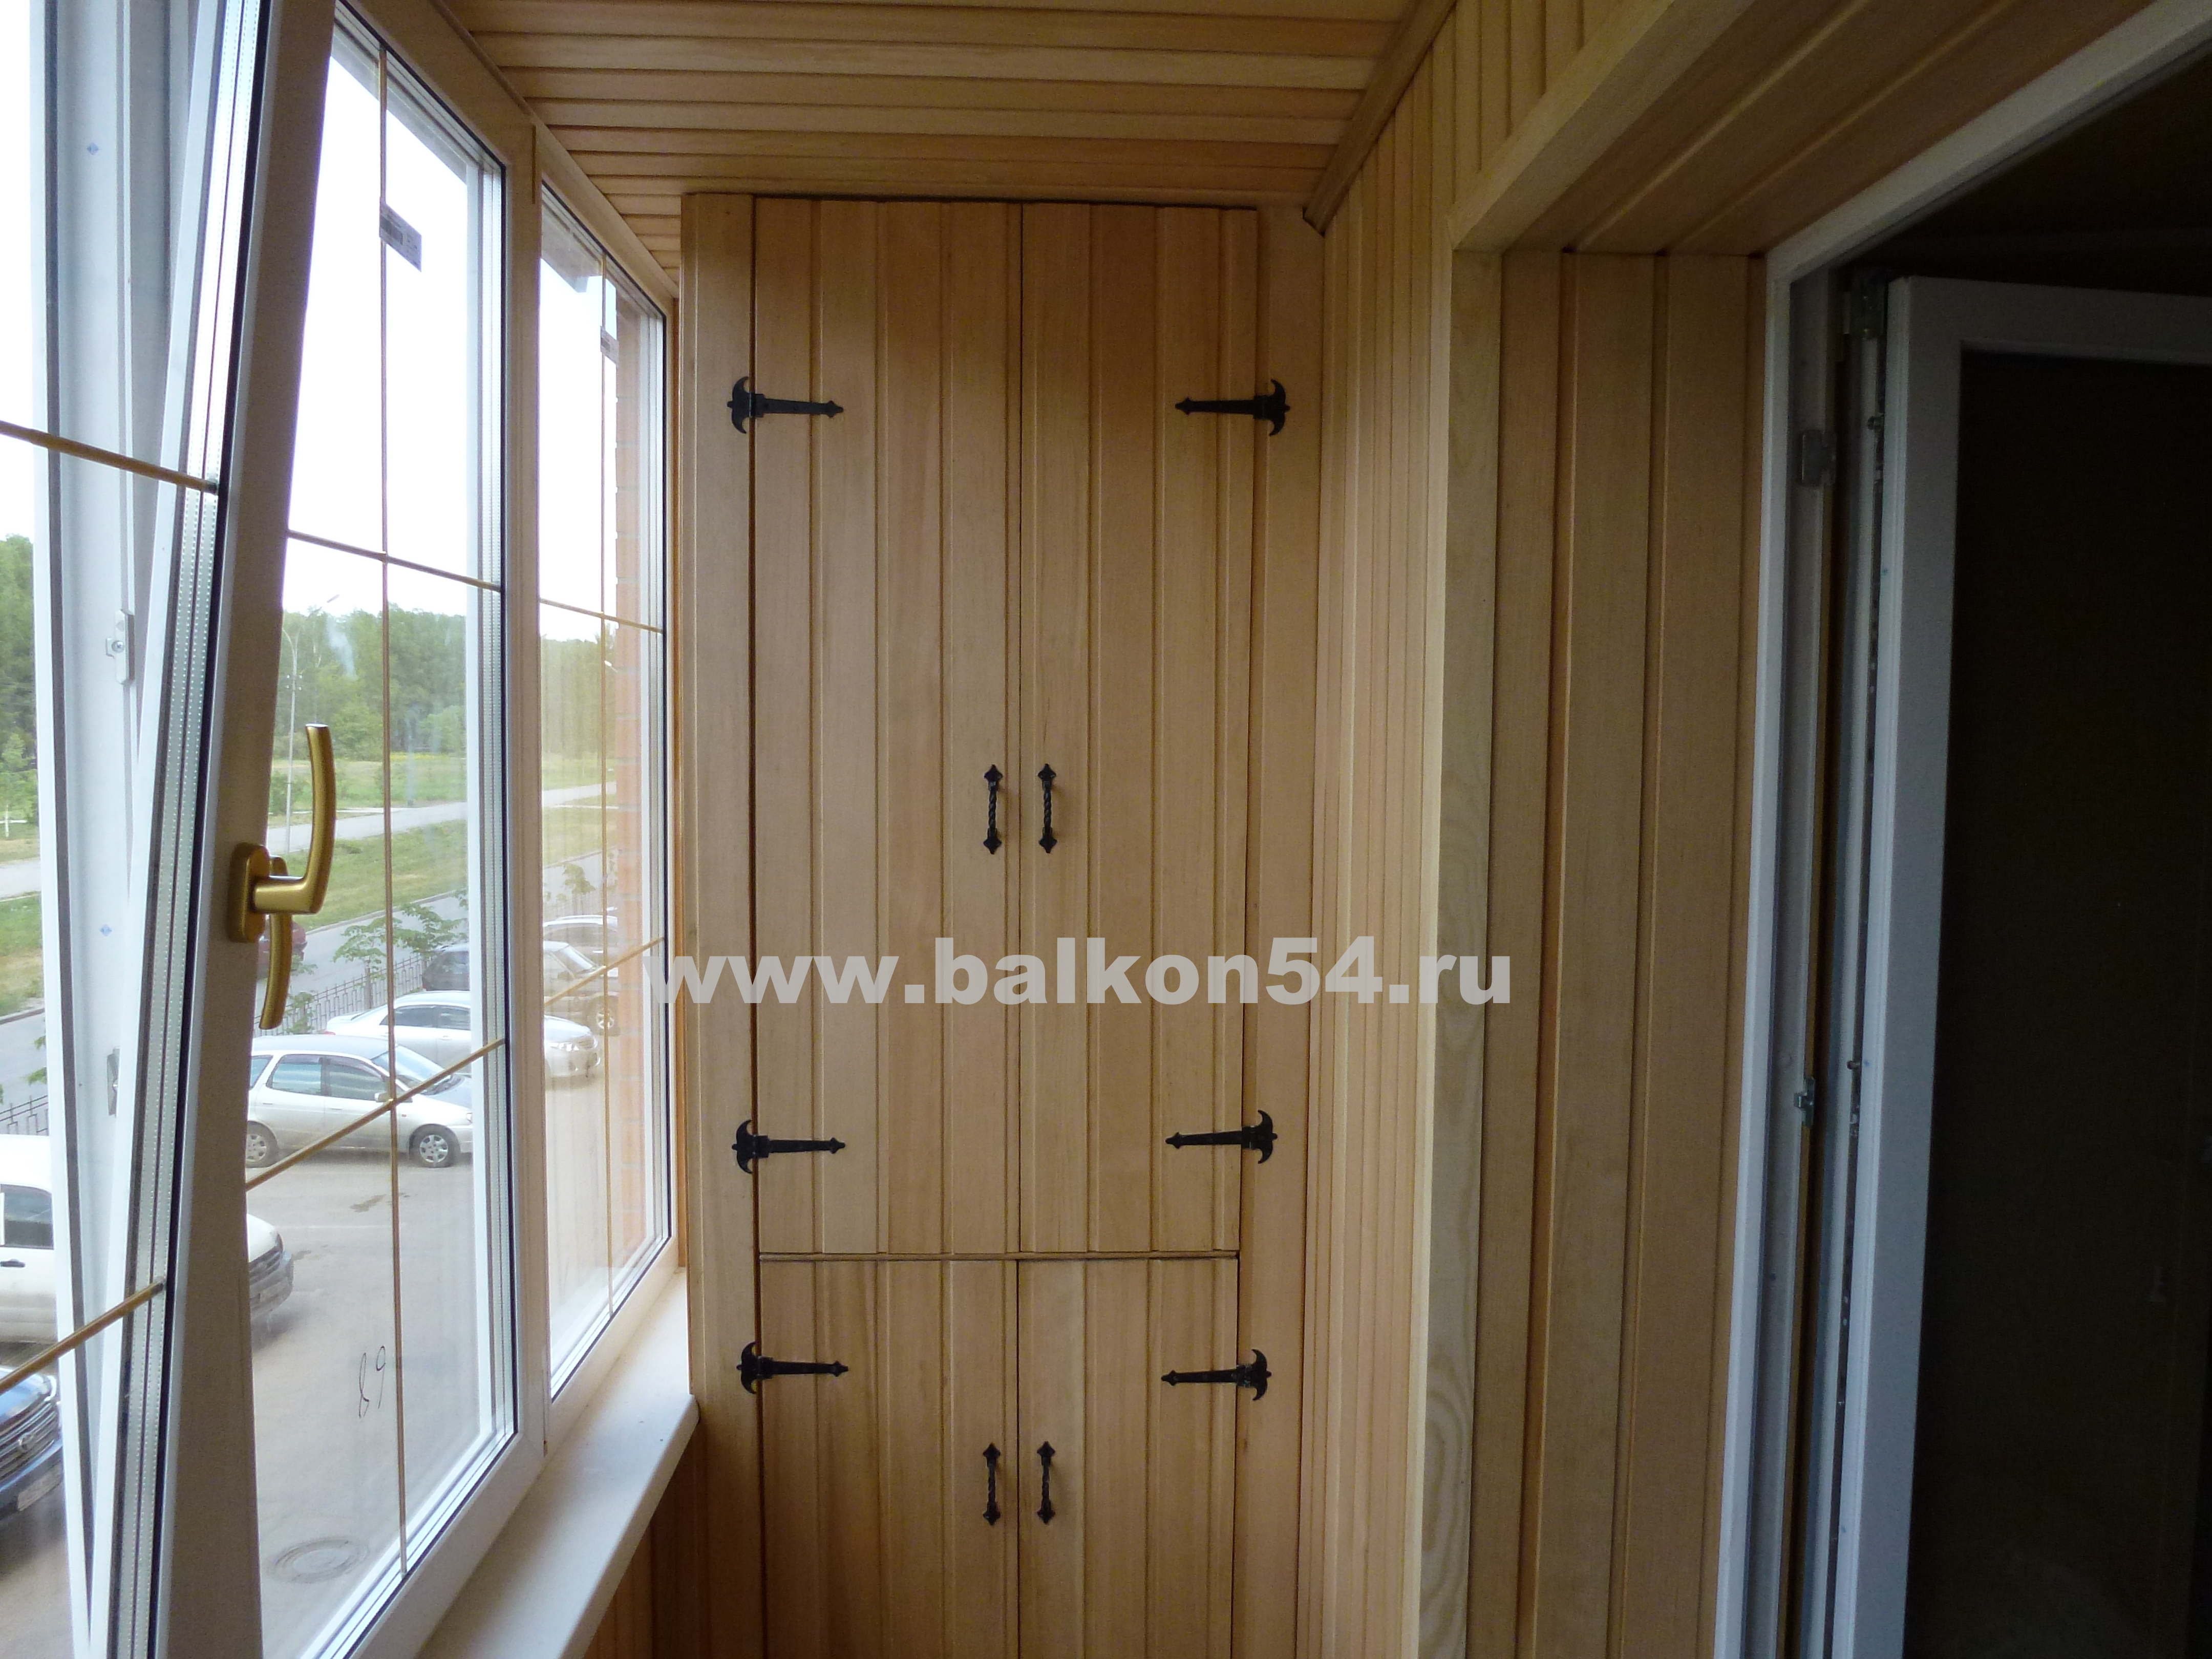 Шкафы и мебель для балкона. Заказать раздвижной шкаф на балкон в Минске по низкой цене